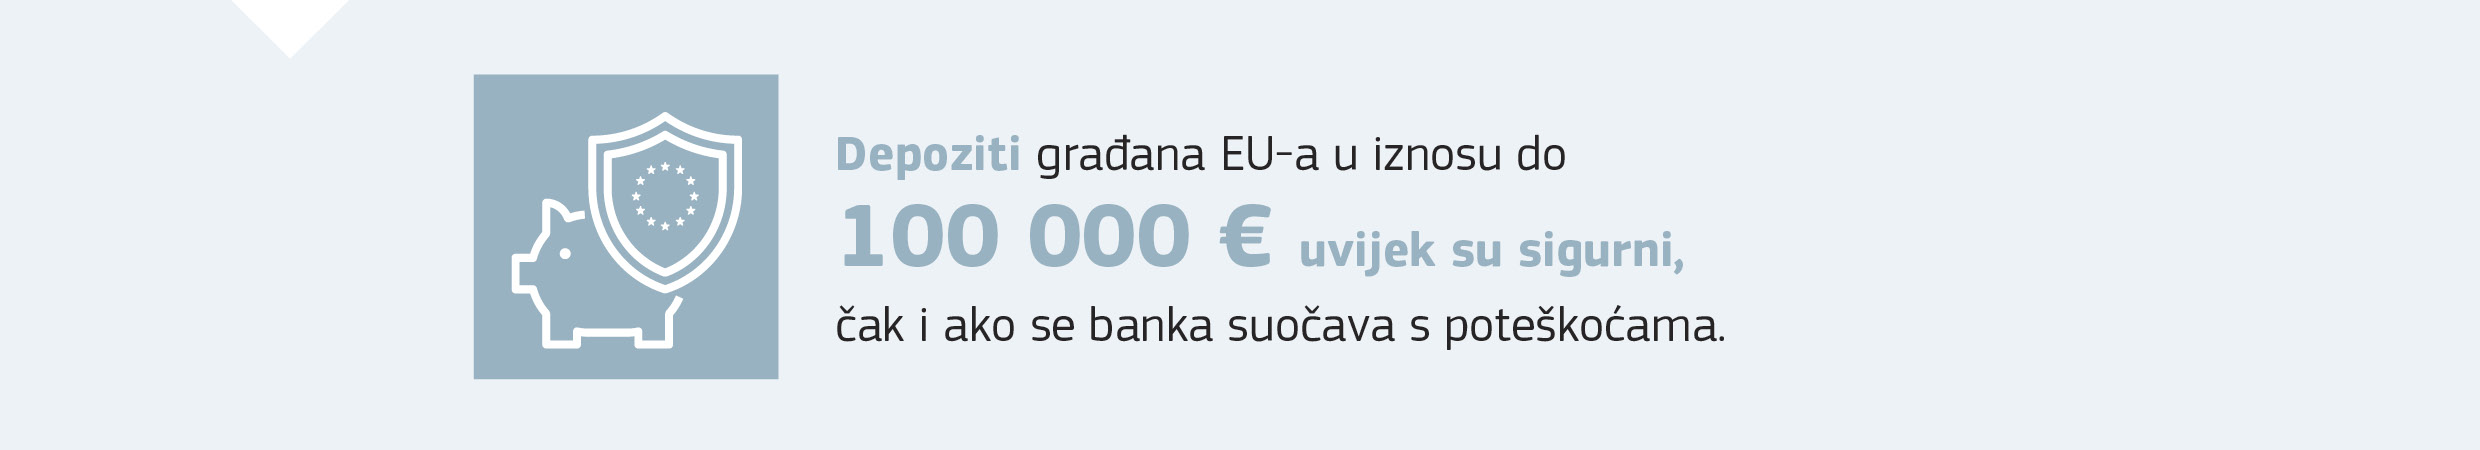 Depoziti građana EU-a u iznosu do 100 000 € uvijek su sigurni, čak i ako se banka suočava s poteškoćama.